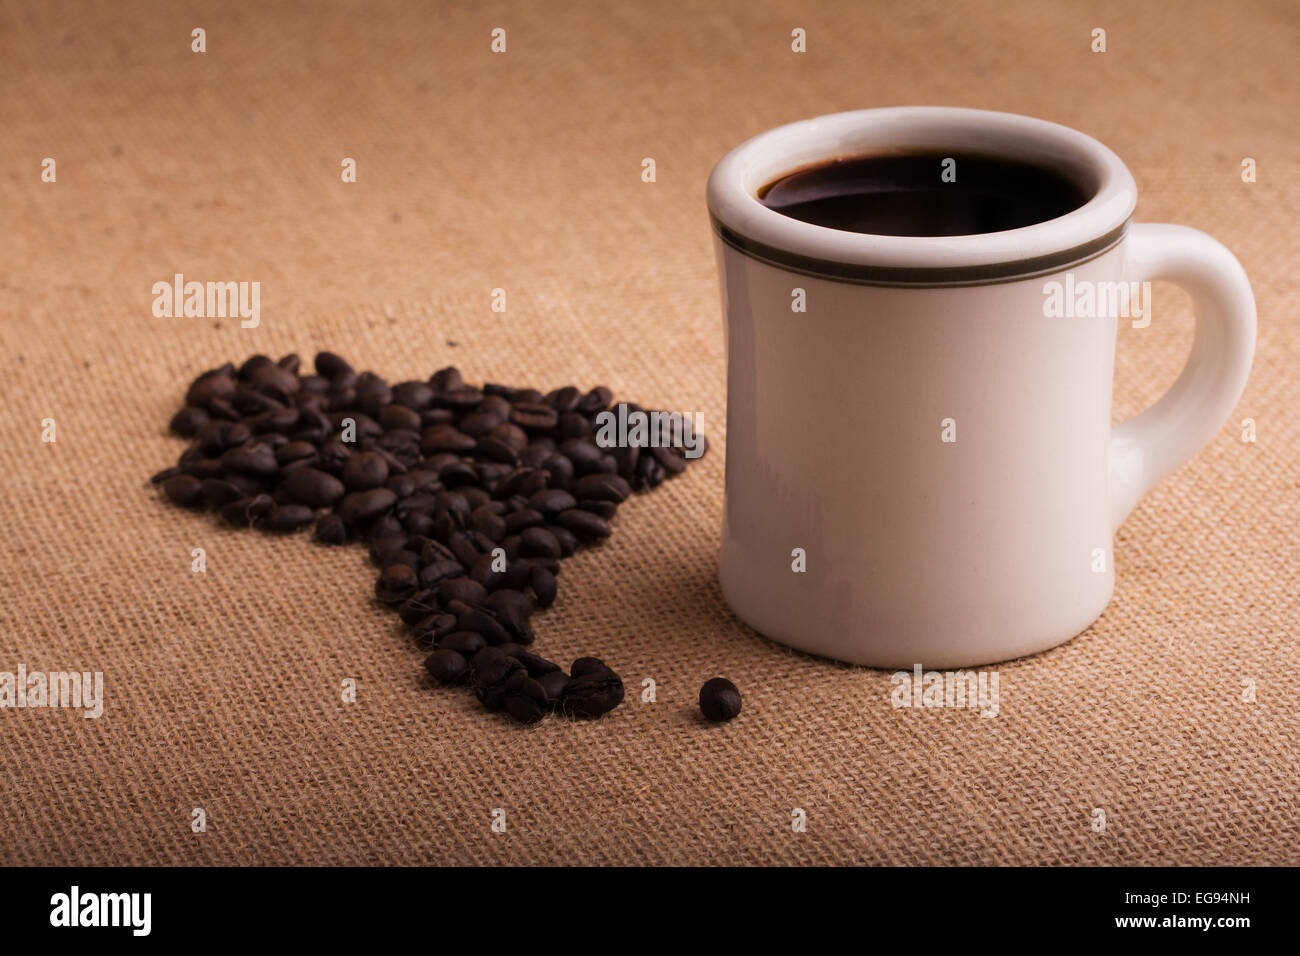 Kaffeetasse mit Bohnen in Form von Südamerika auf Sackleinen, mit einer leichten vignette Stockfoto